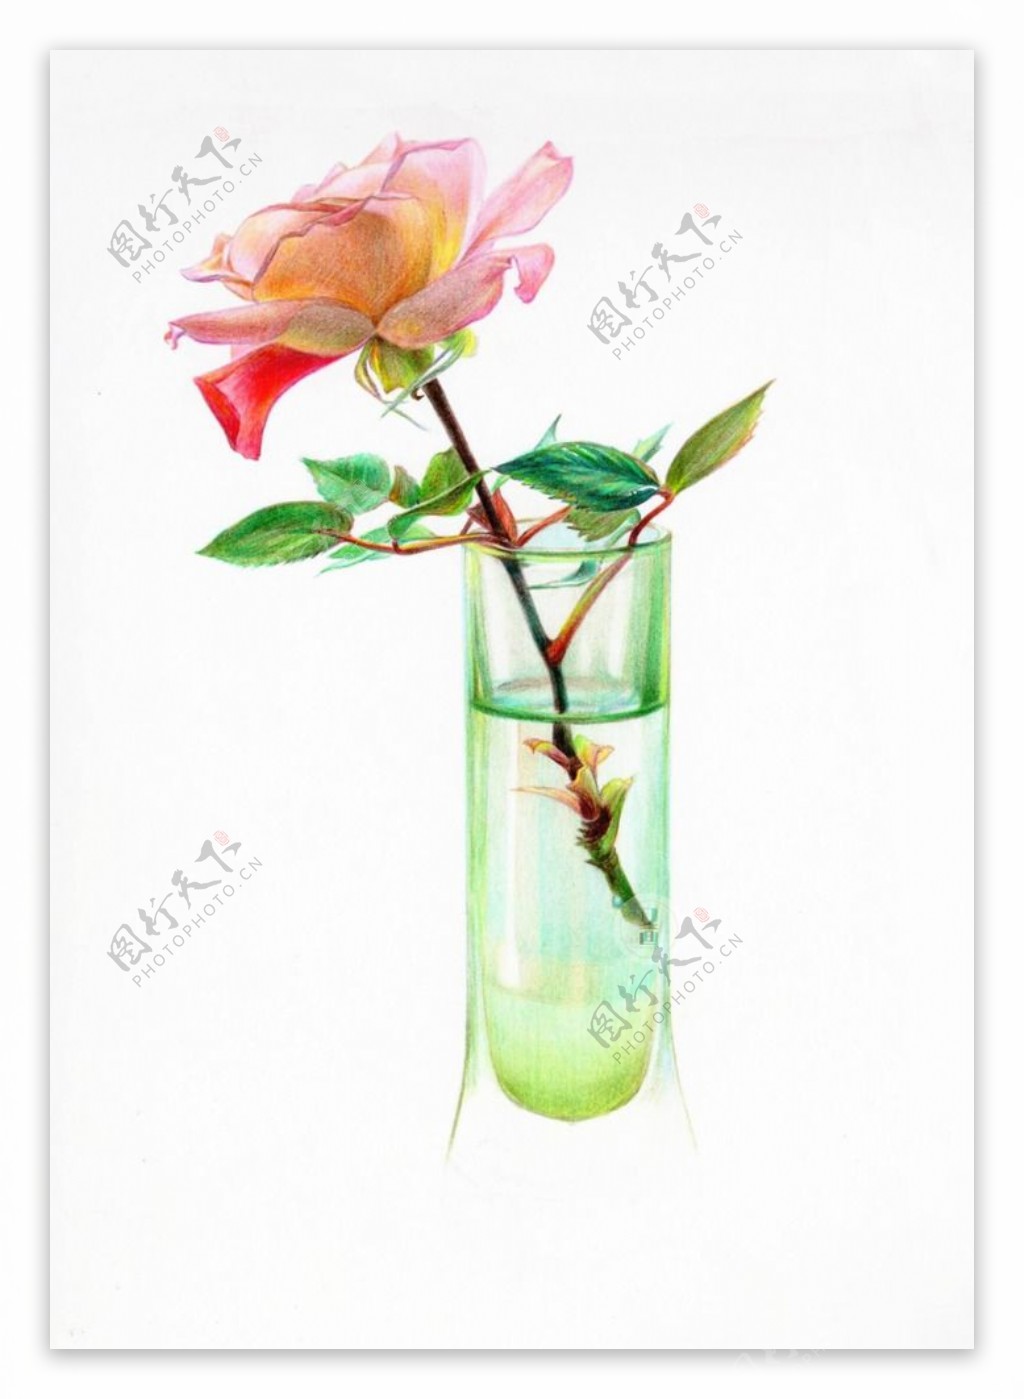 彩铅玫瑰花玻璃杯组合